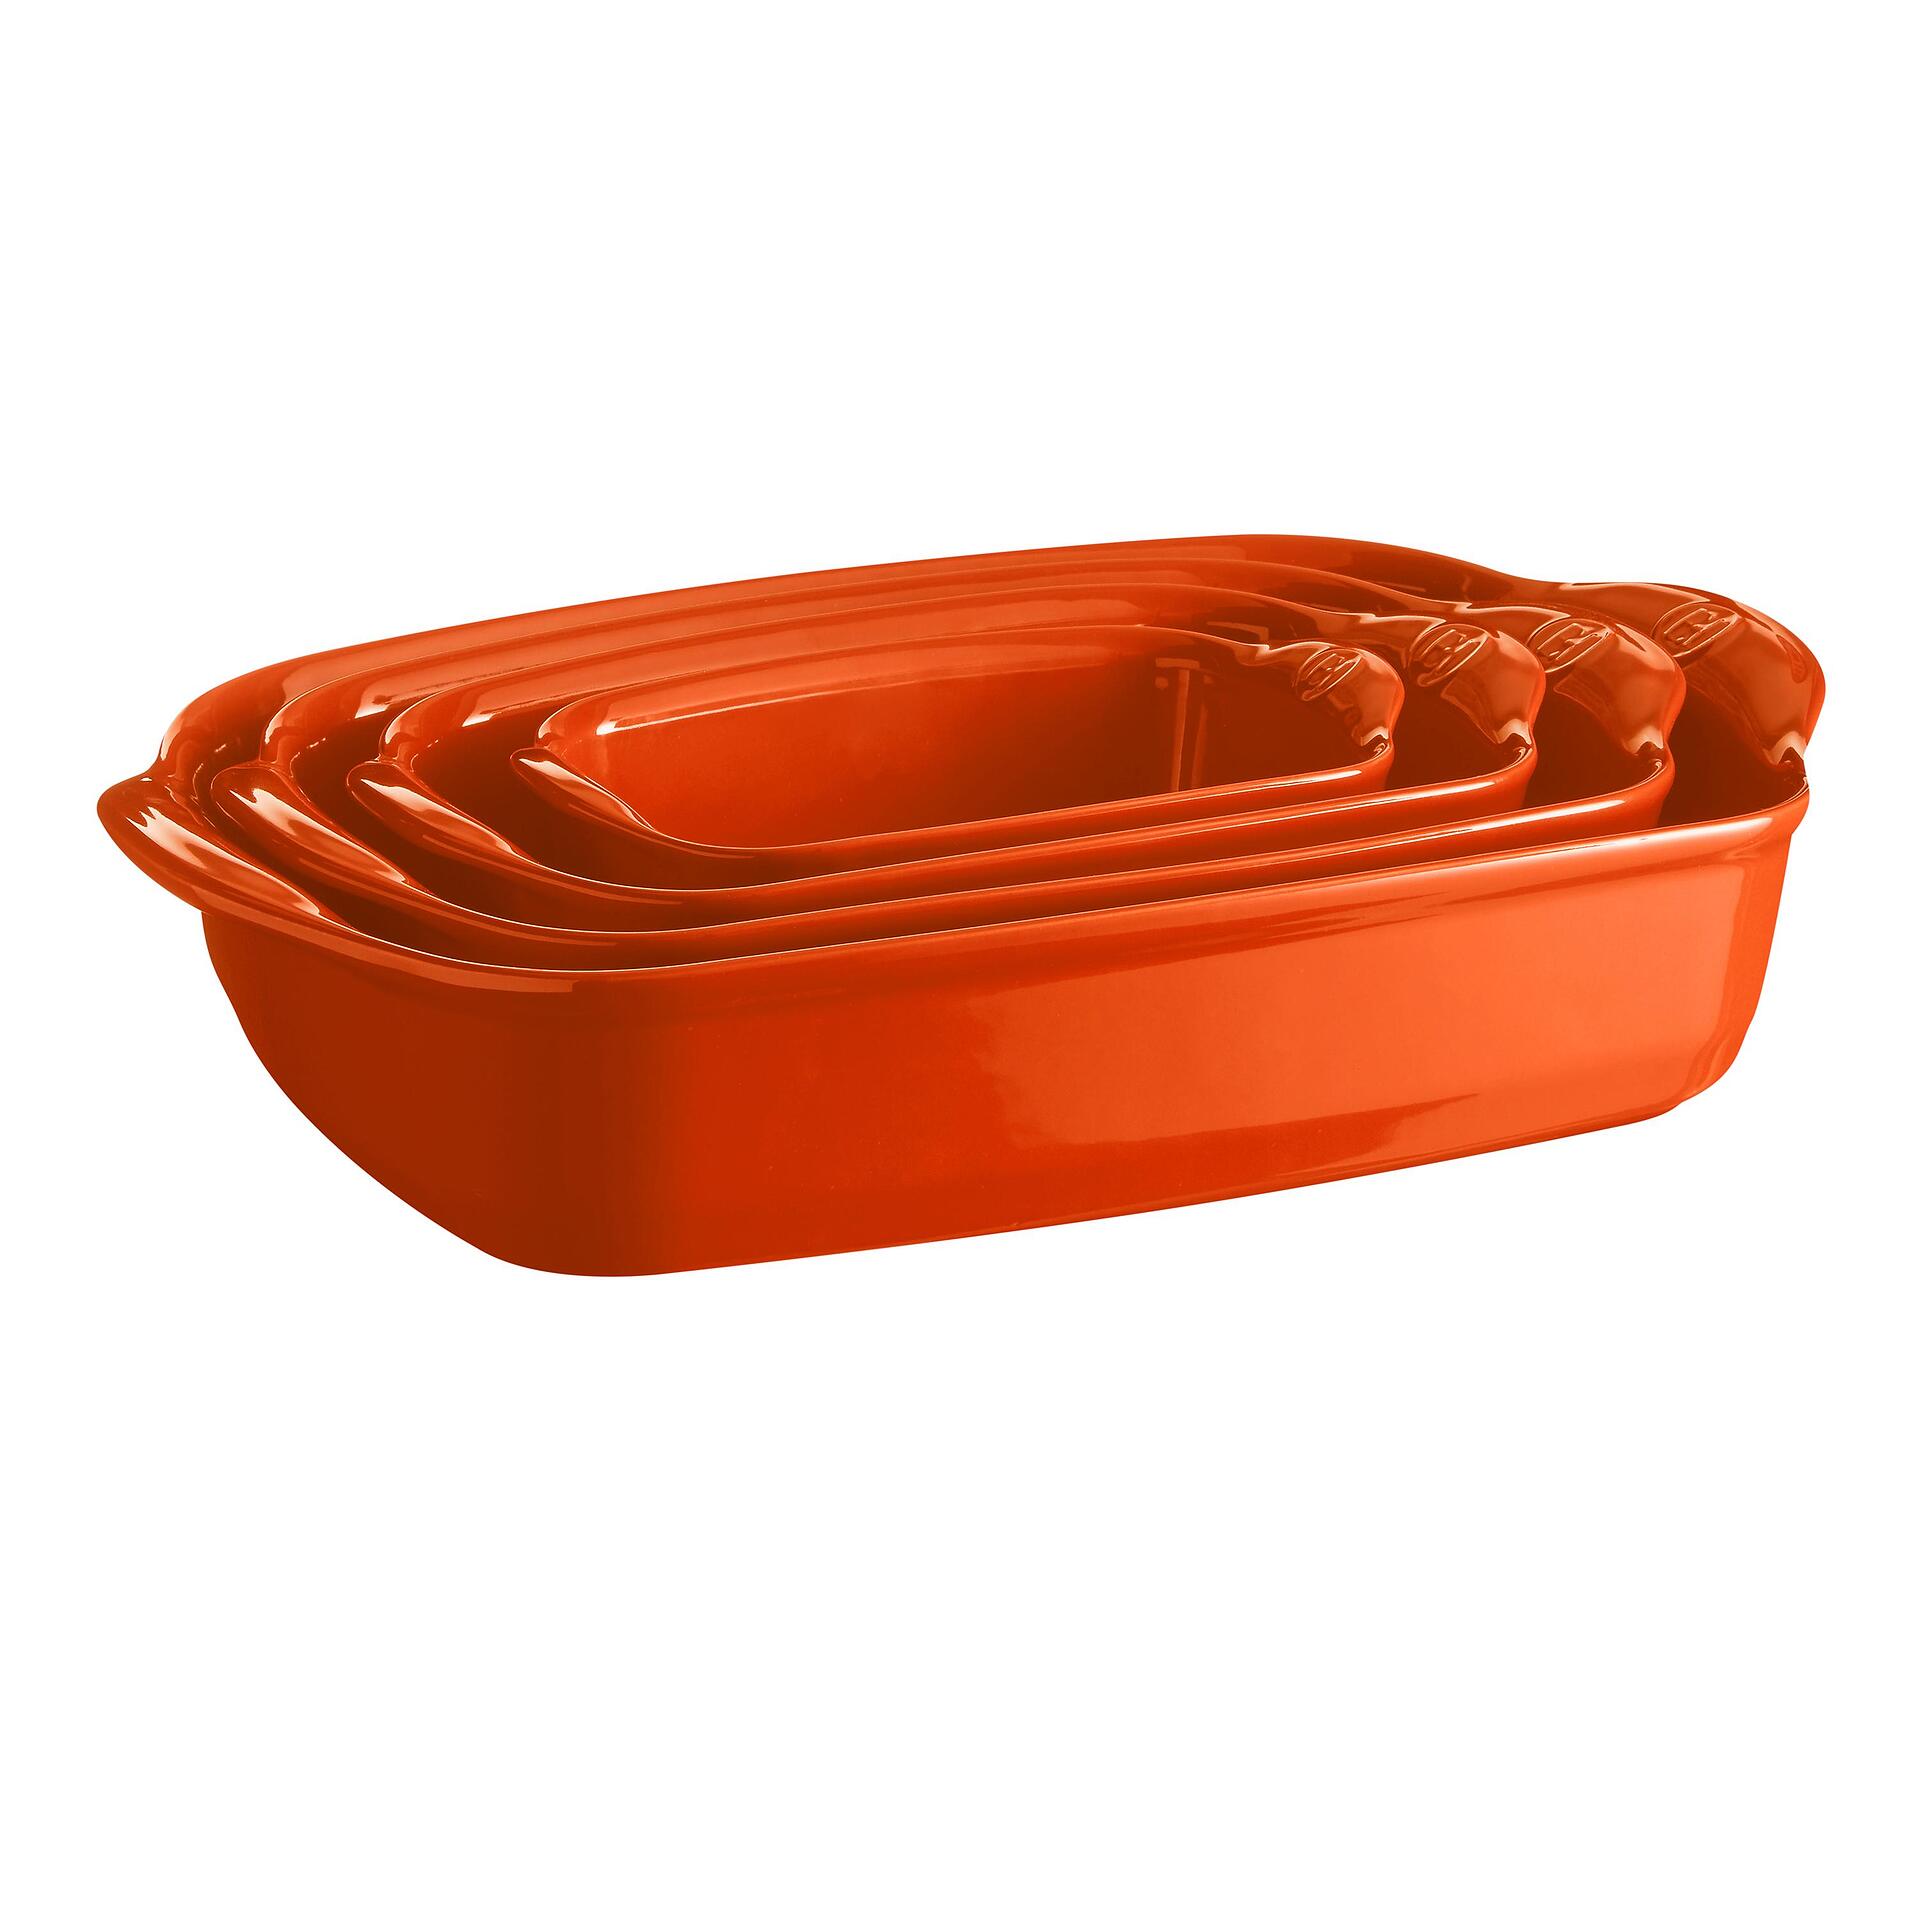 EMILE HENRY Керамична тава " SMALL RECTANGULAR OVEN DISH"- 30х19 см - цвят оранжев